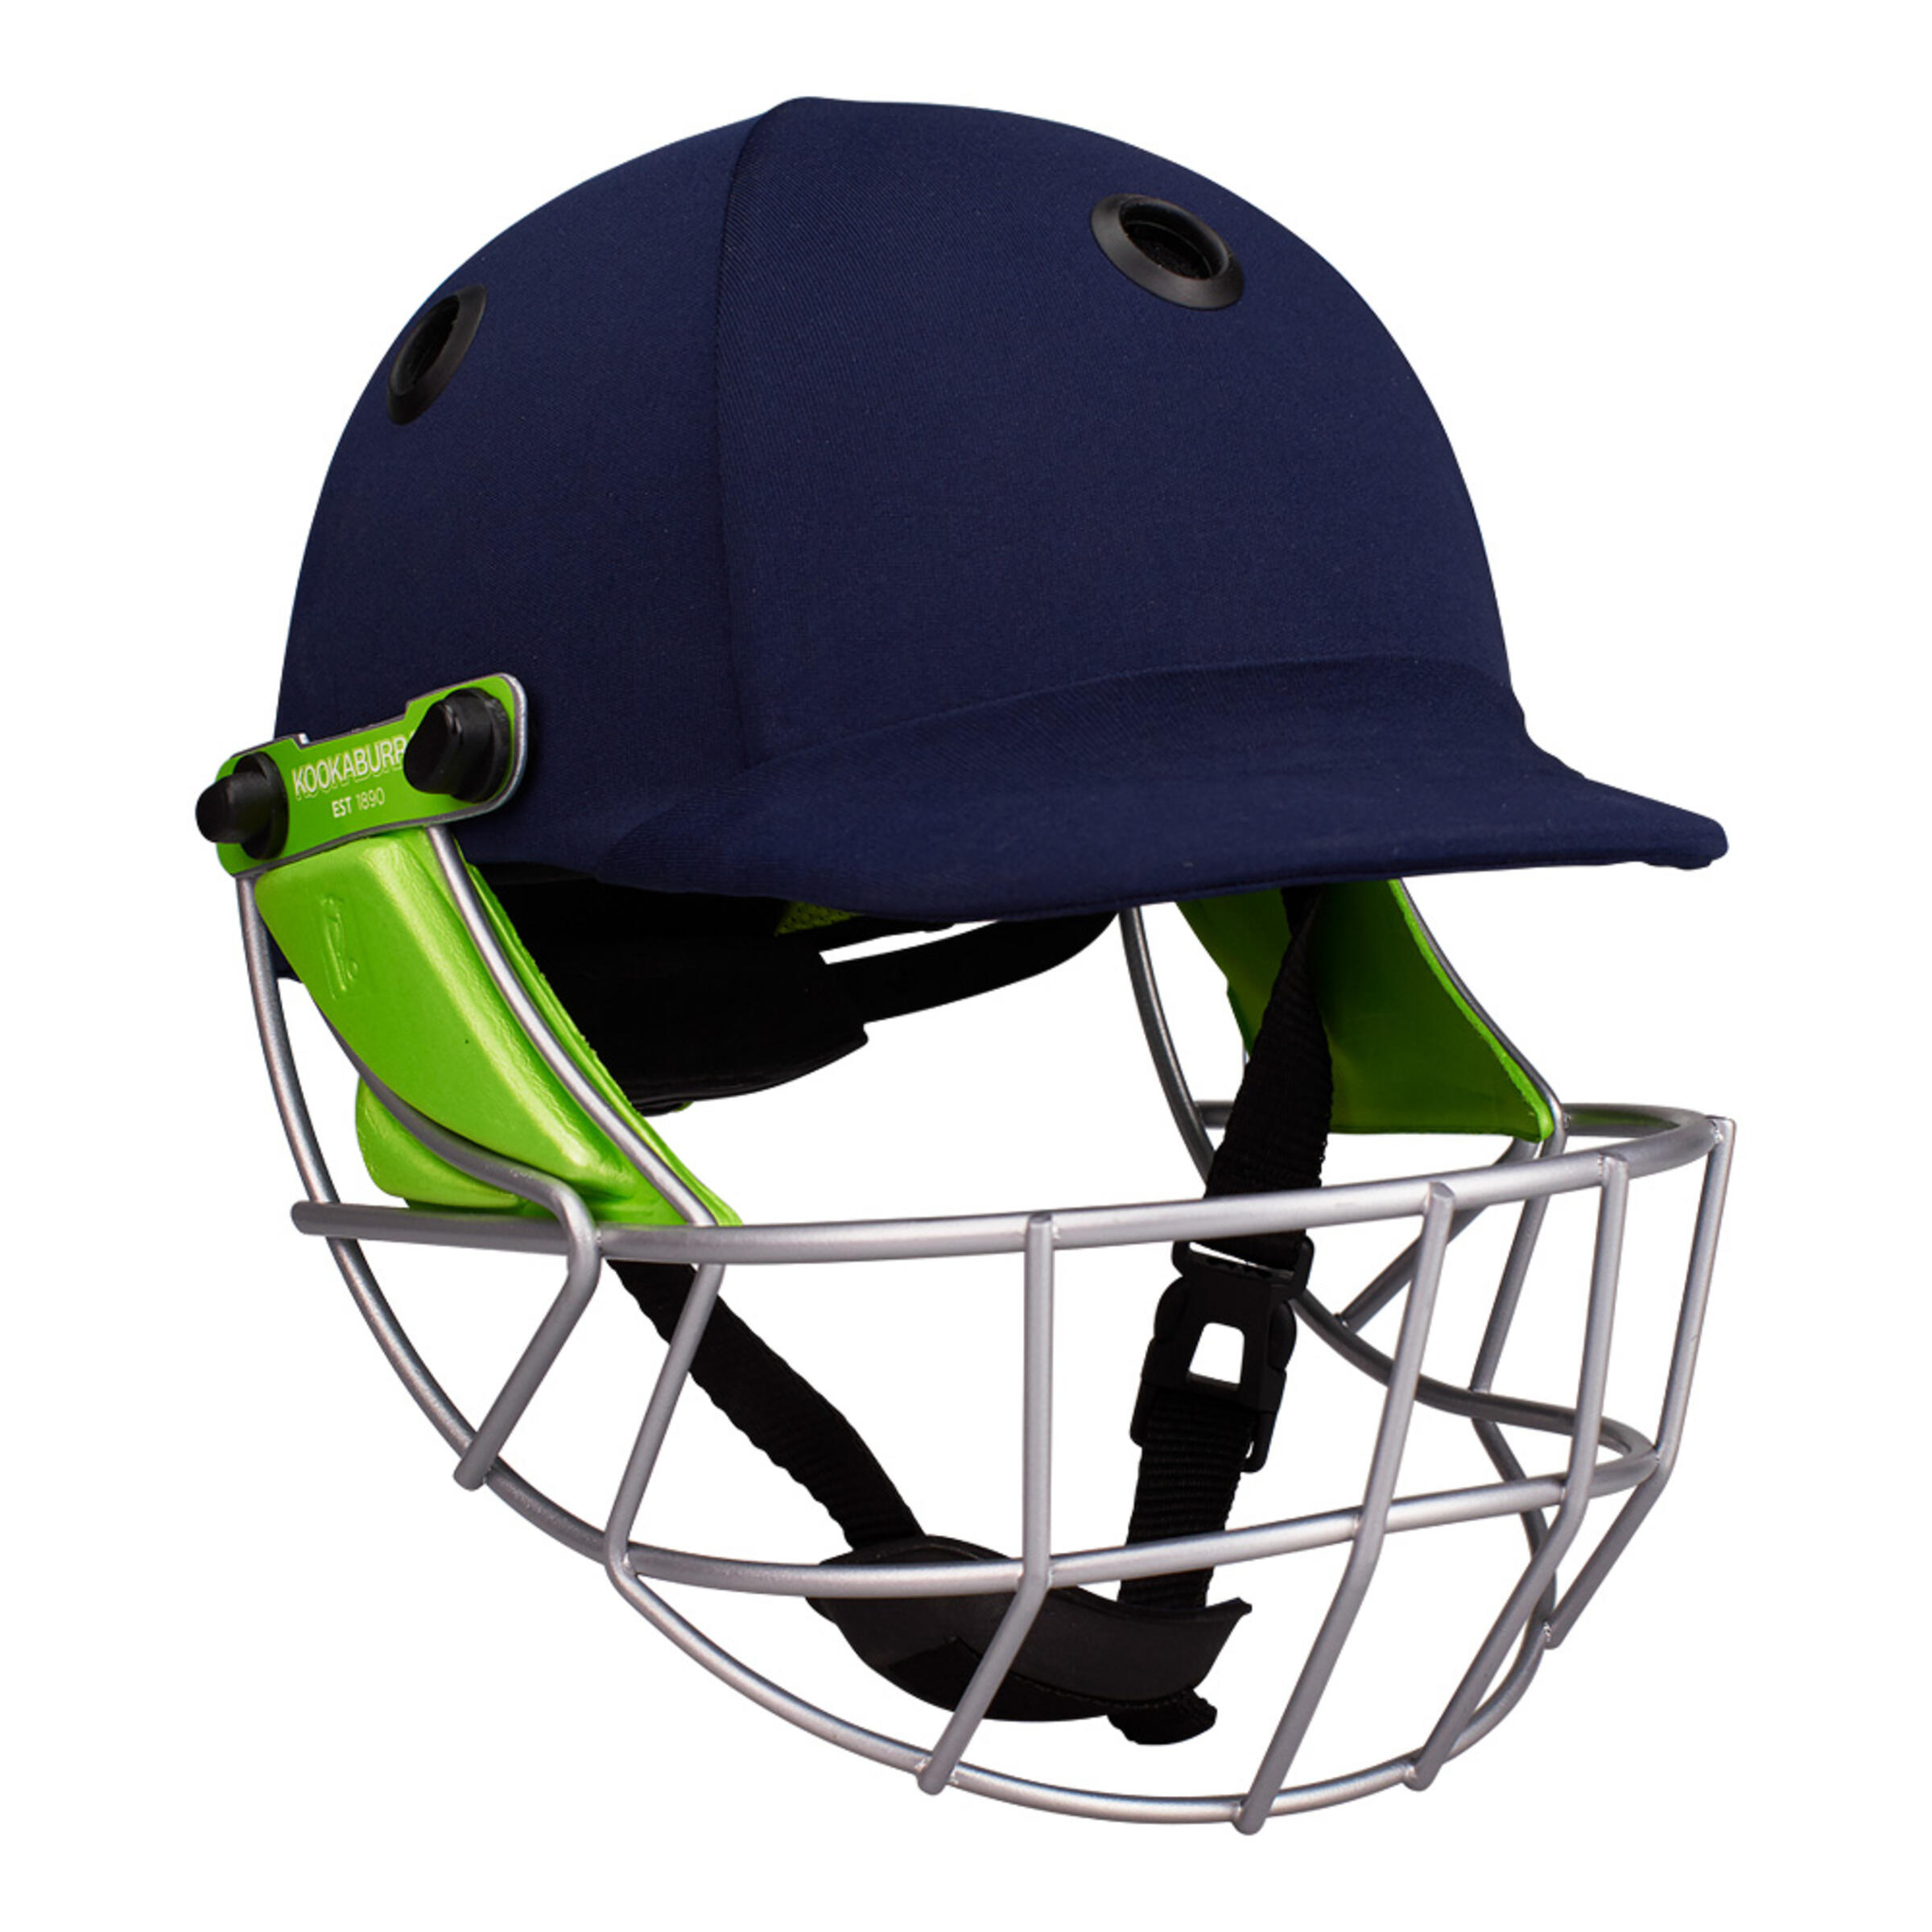 KOOKABURRA Pro 600 Cricket Batting Helmet Adult Medium